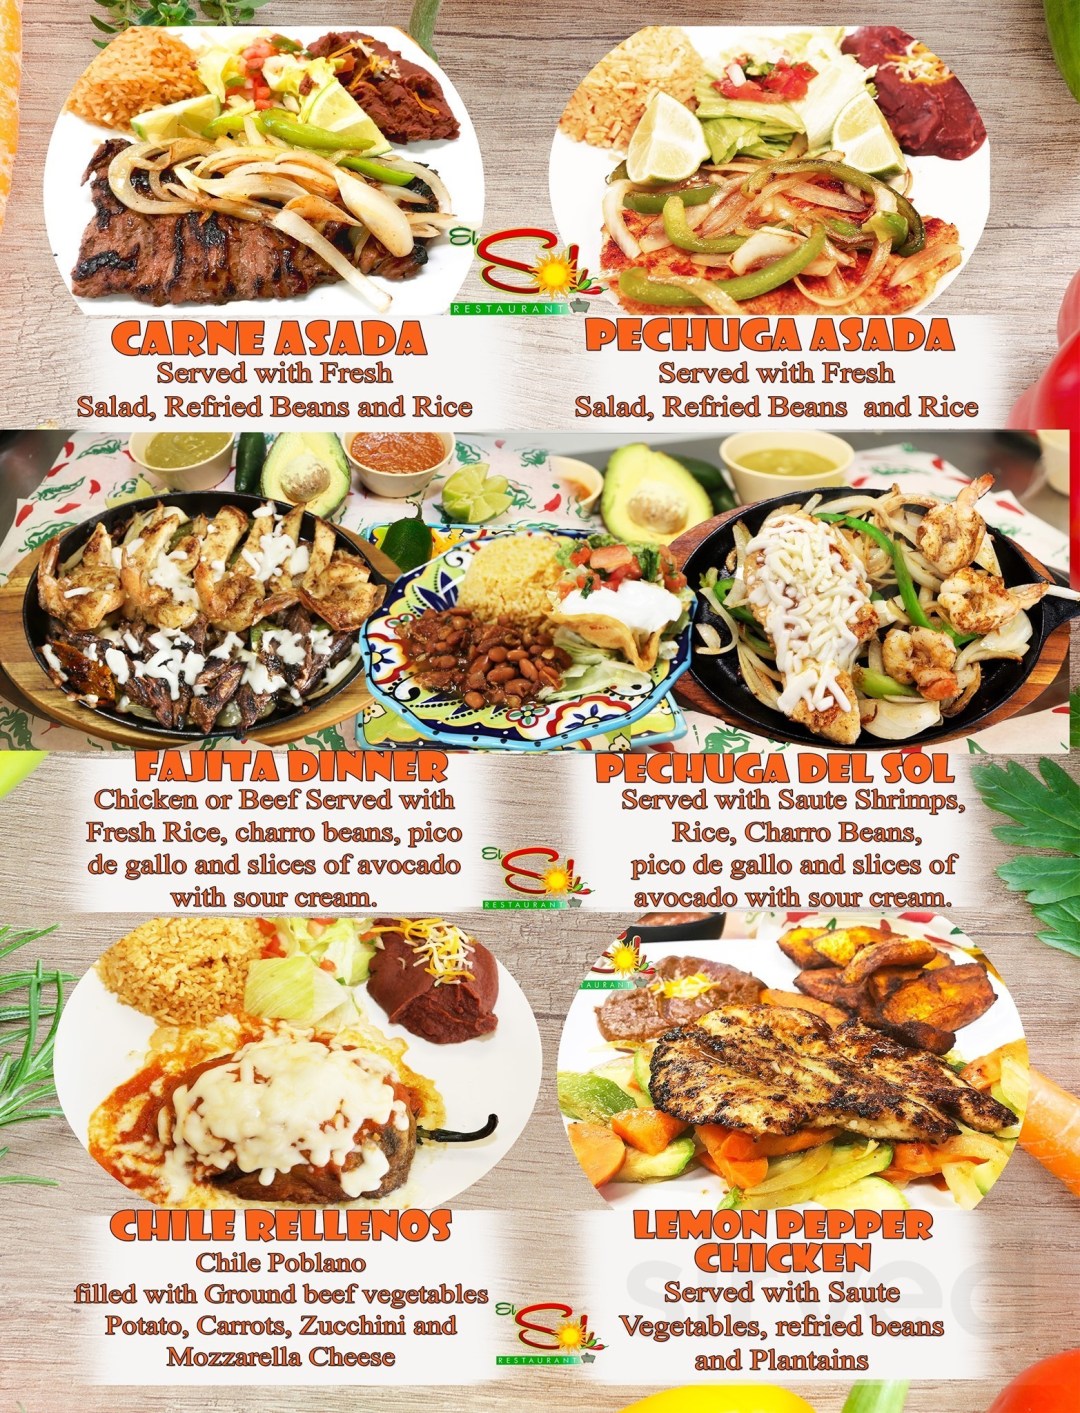 Picture of: EL SOL RESTAURANT menu in Katy, Texas, USA